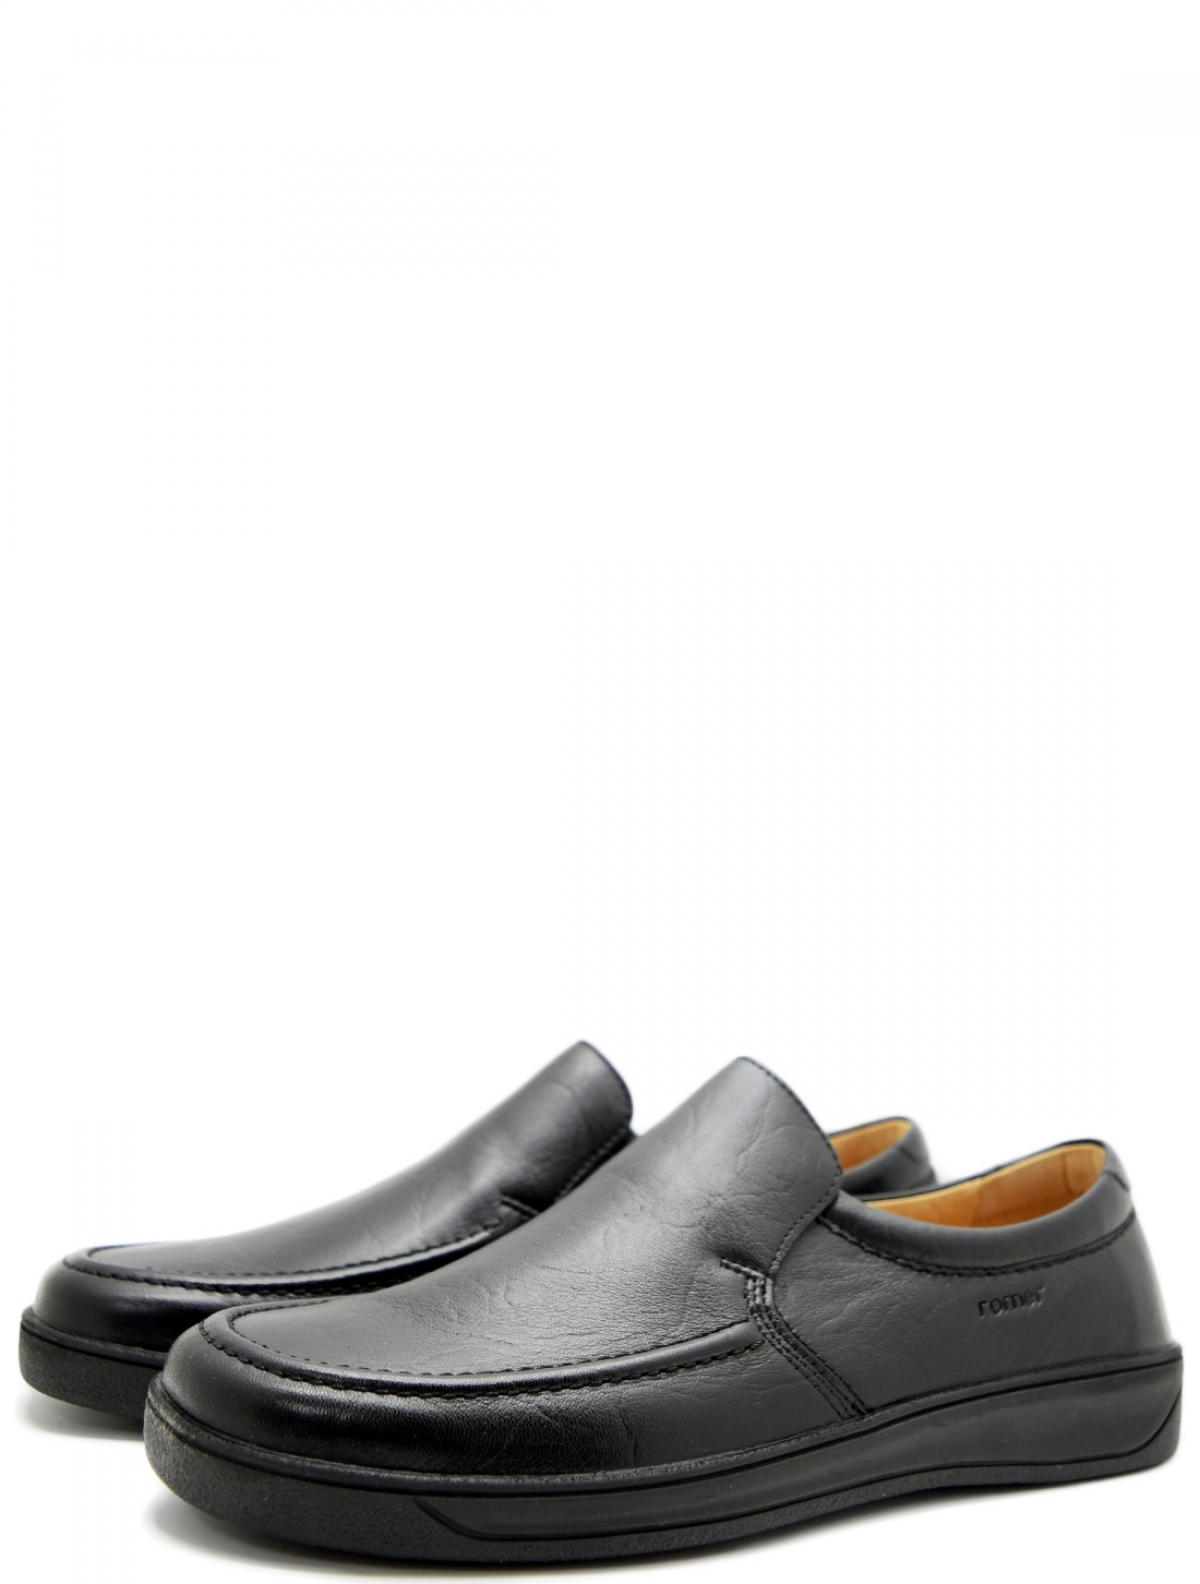 Romer 924208 мужские туфли